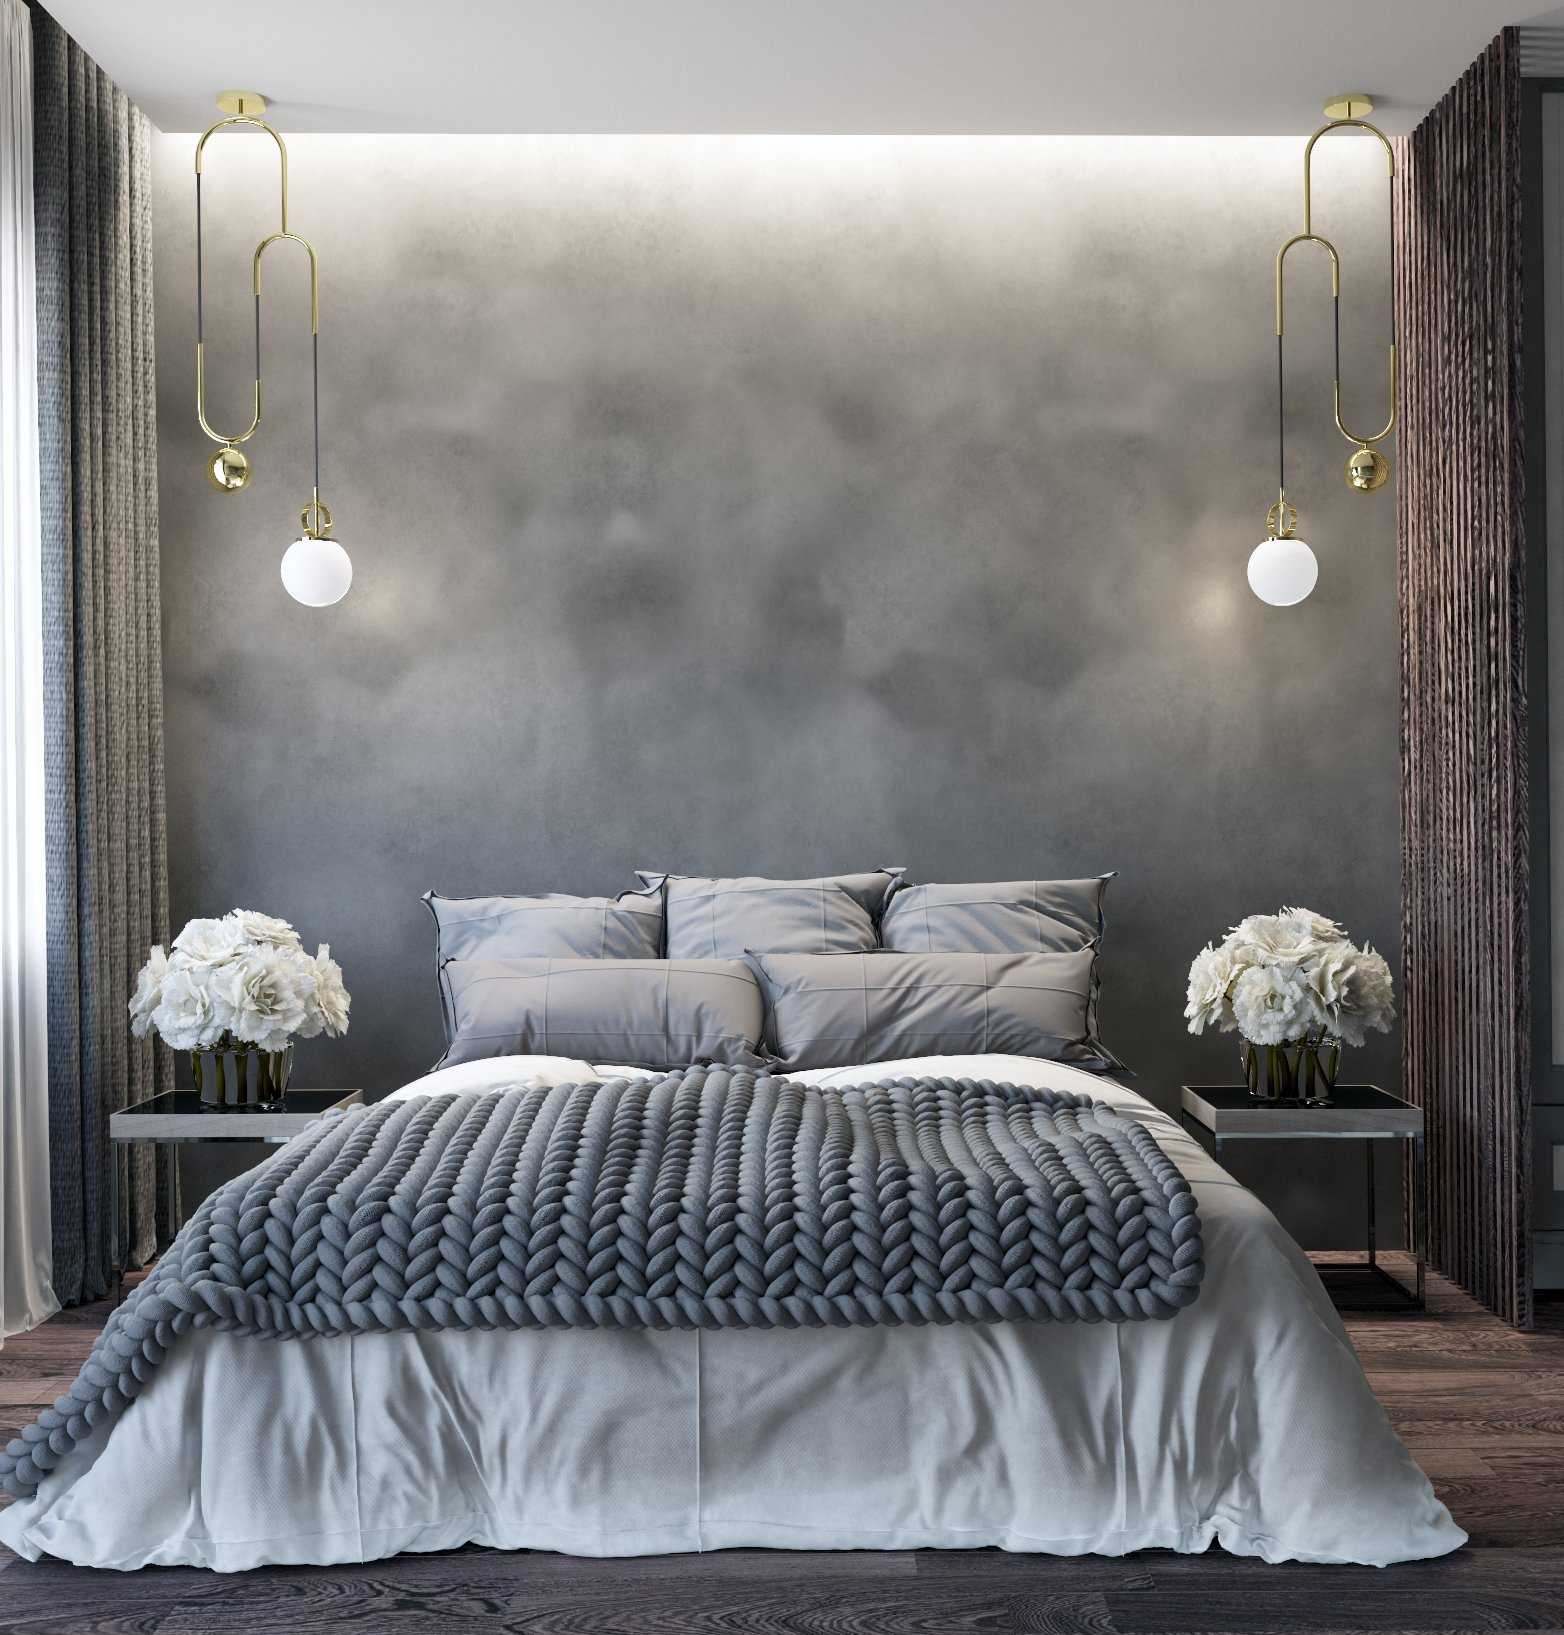 Фотообои в спальню (150 фото) - лучшие идеи дизайна. примеры идеального сочетания в интерьере спальни